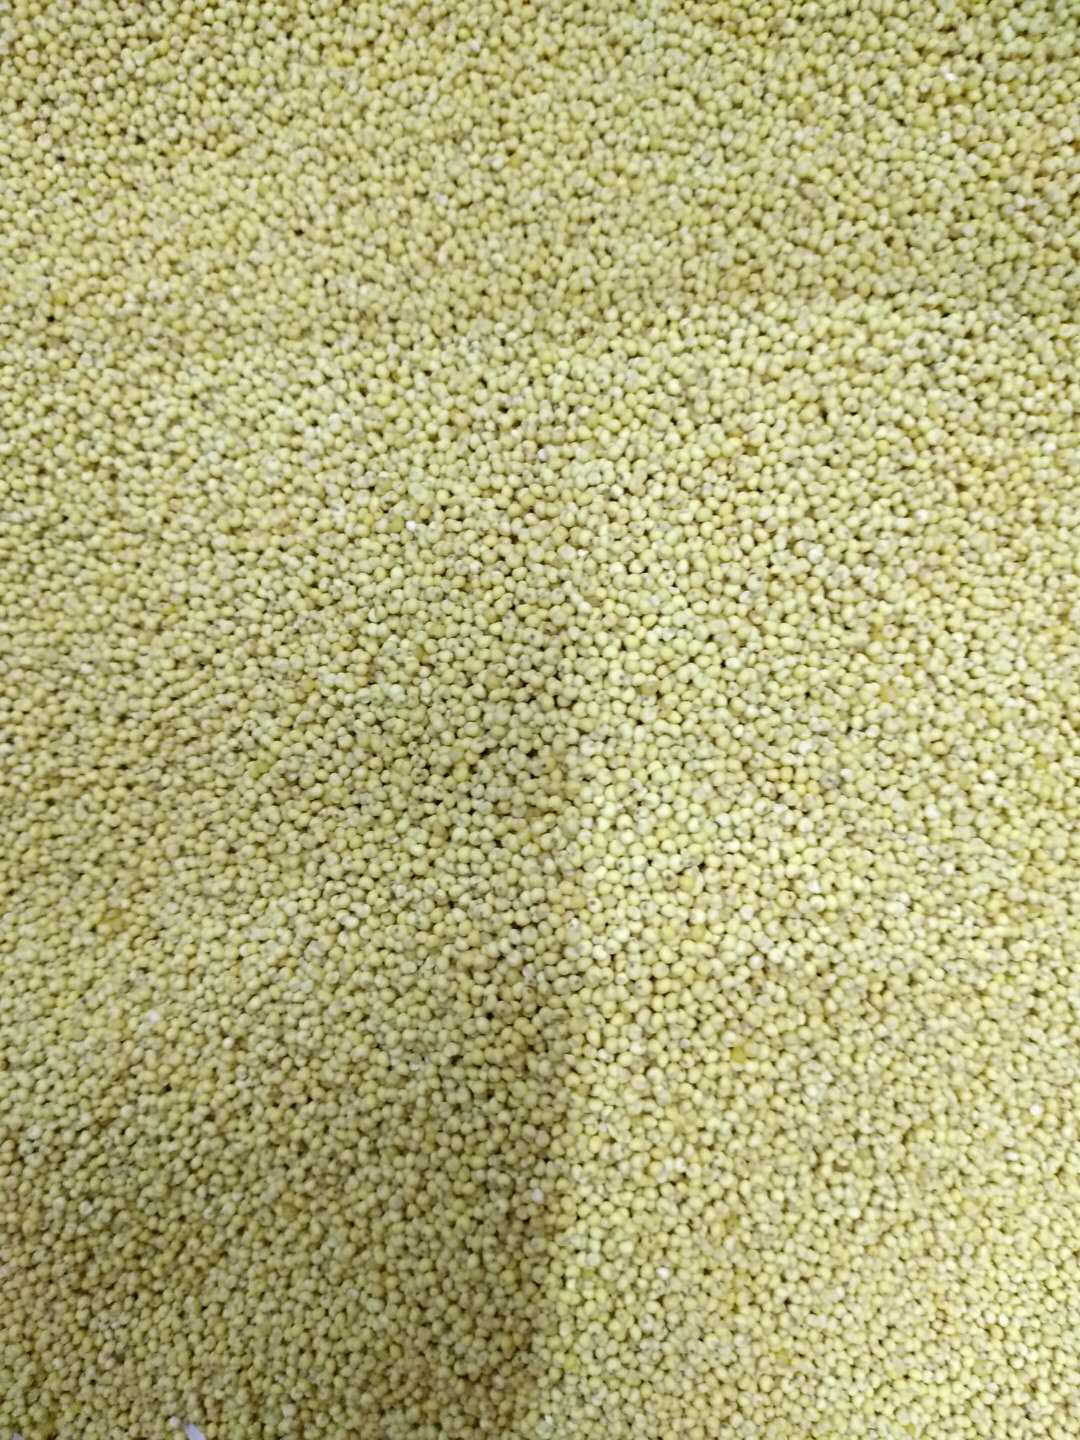 山东莱州黄豆的降低胆固醇作用